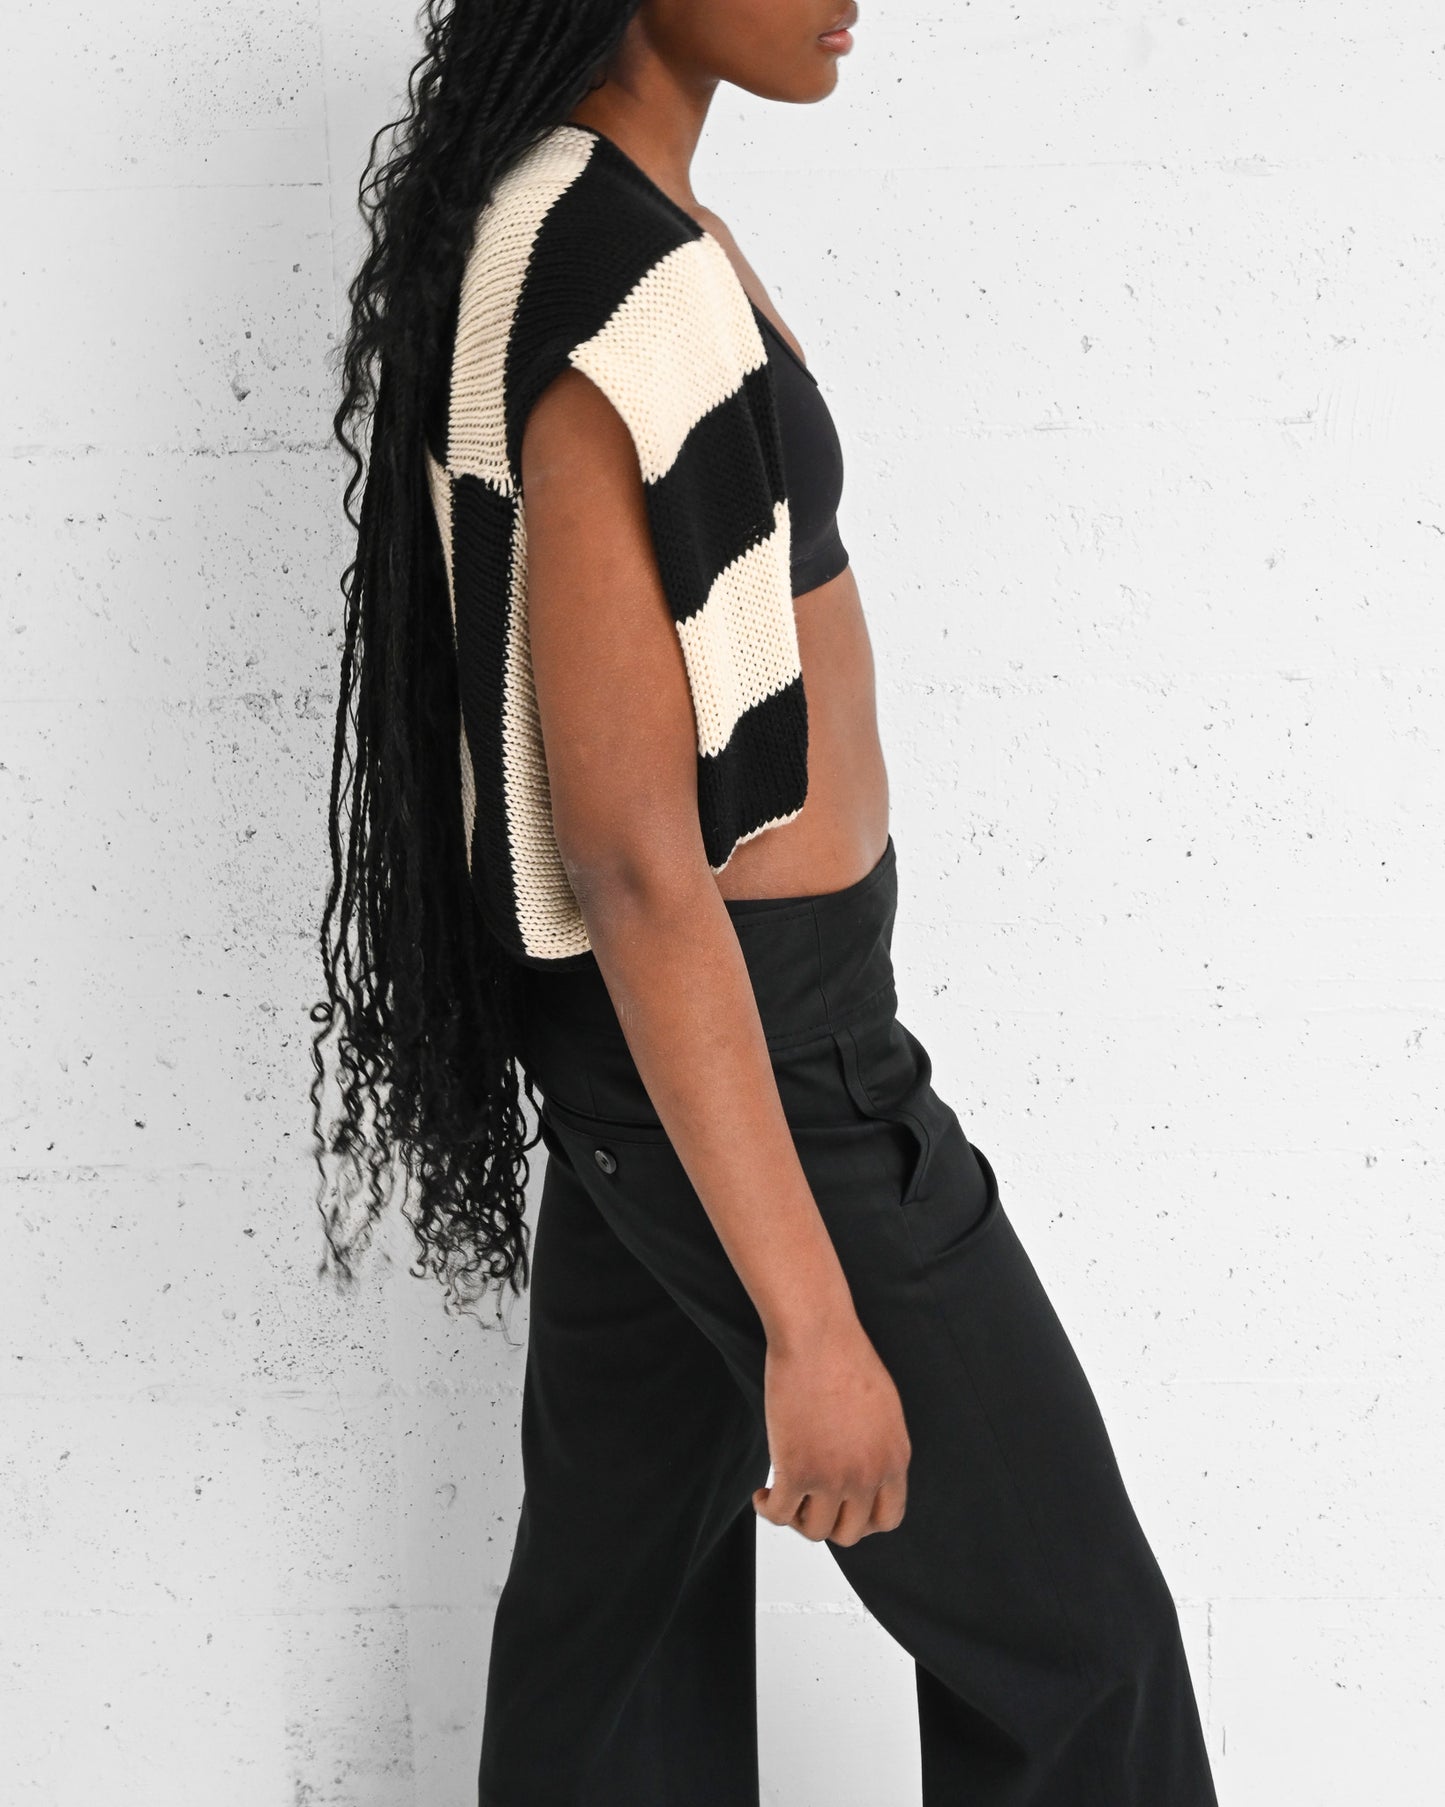 Black & White Striped Knit Shawl (M)